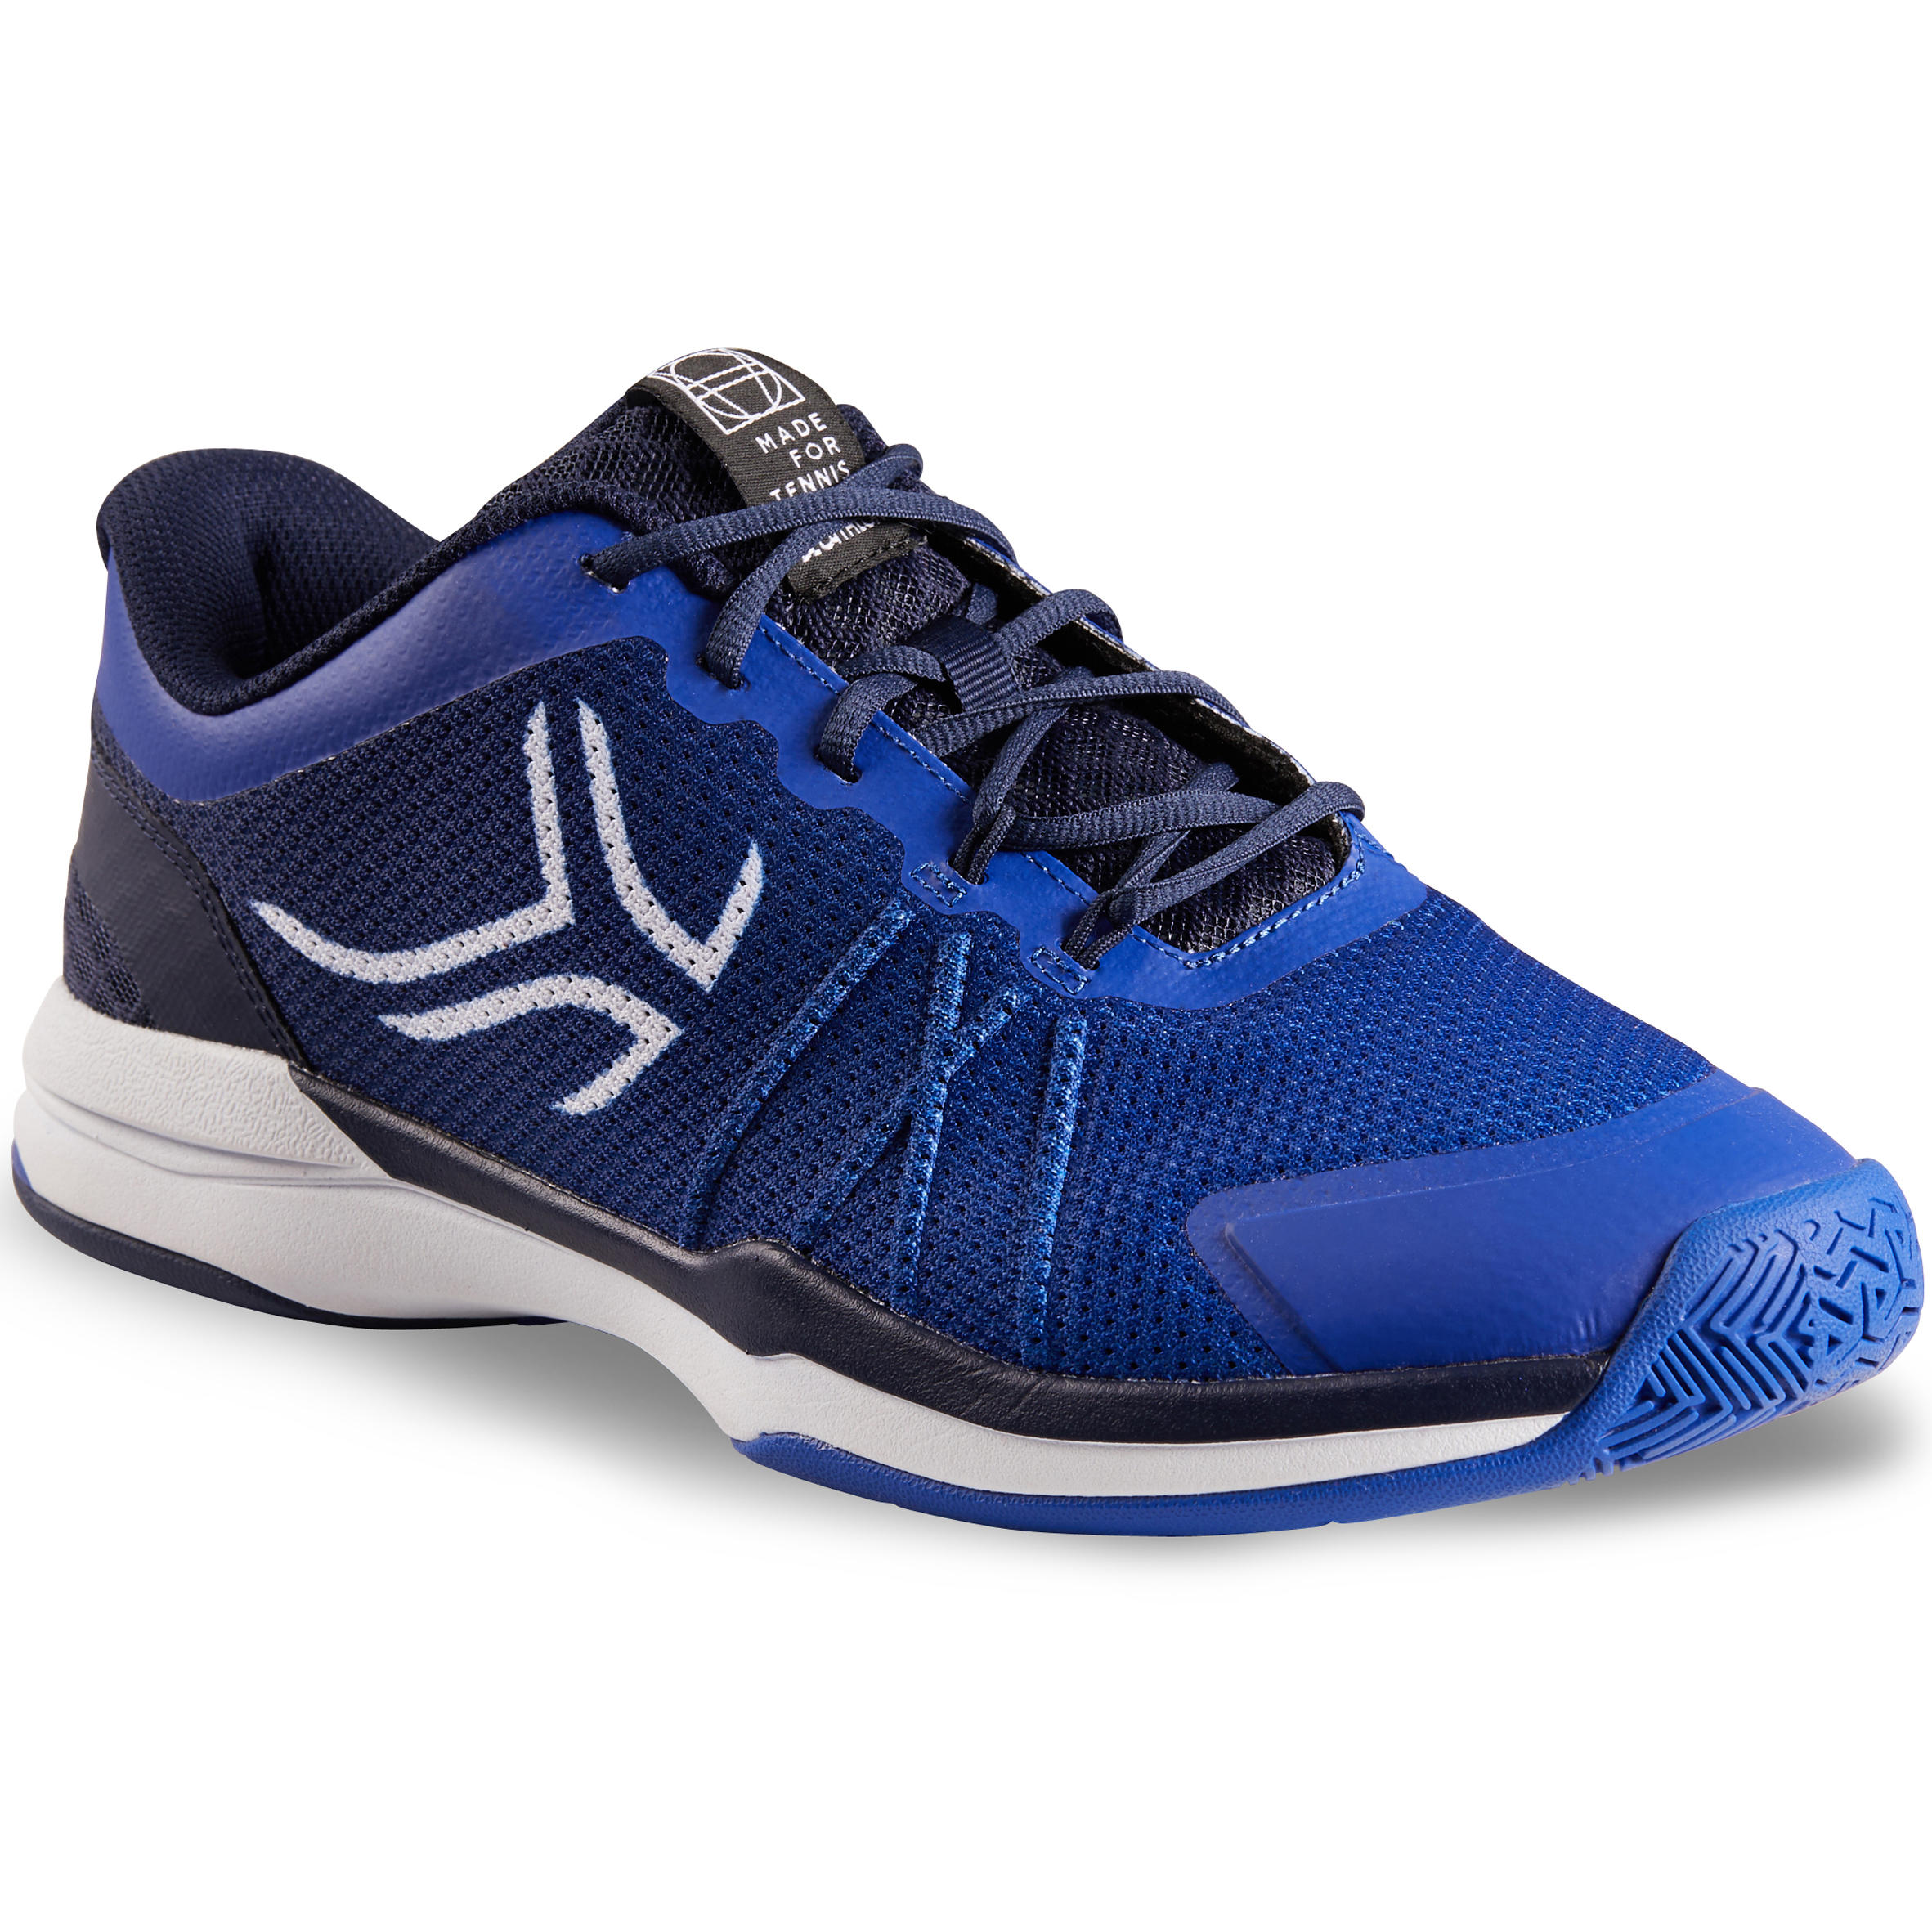 Men's Tennis Shoes TS590 - Blue